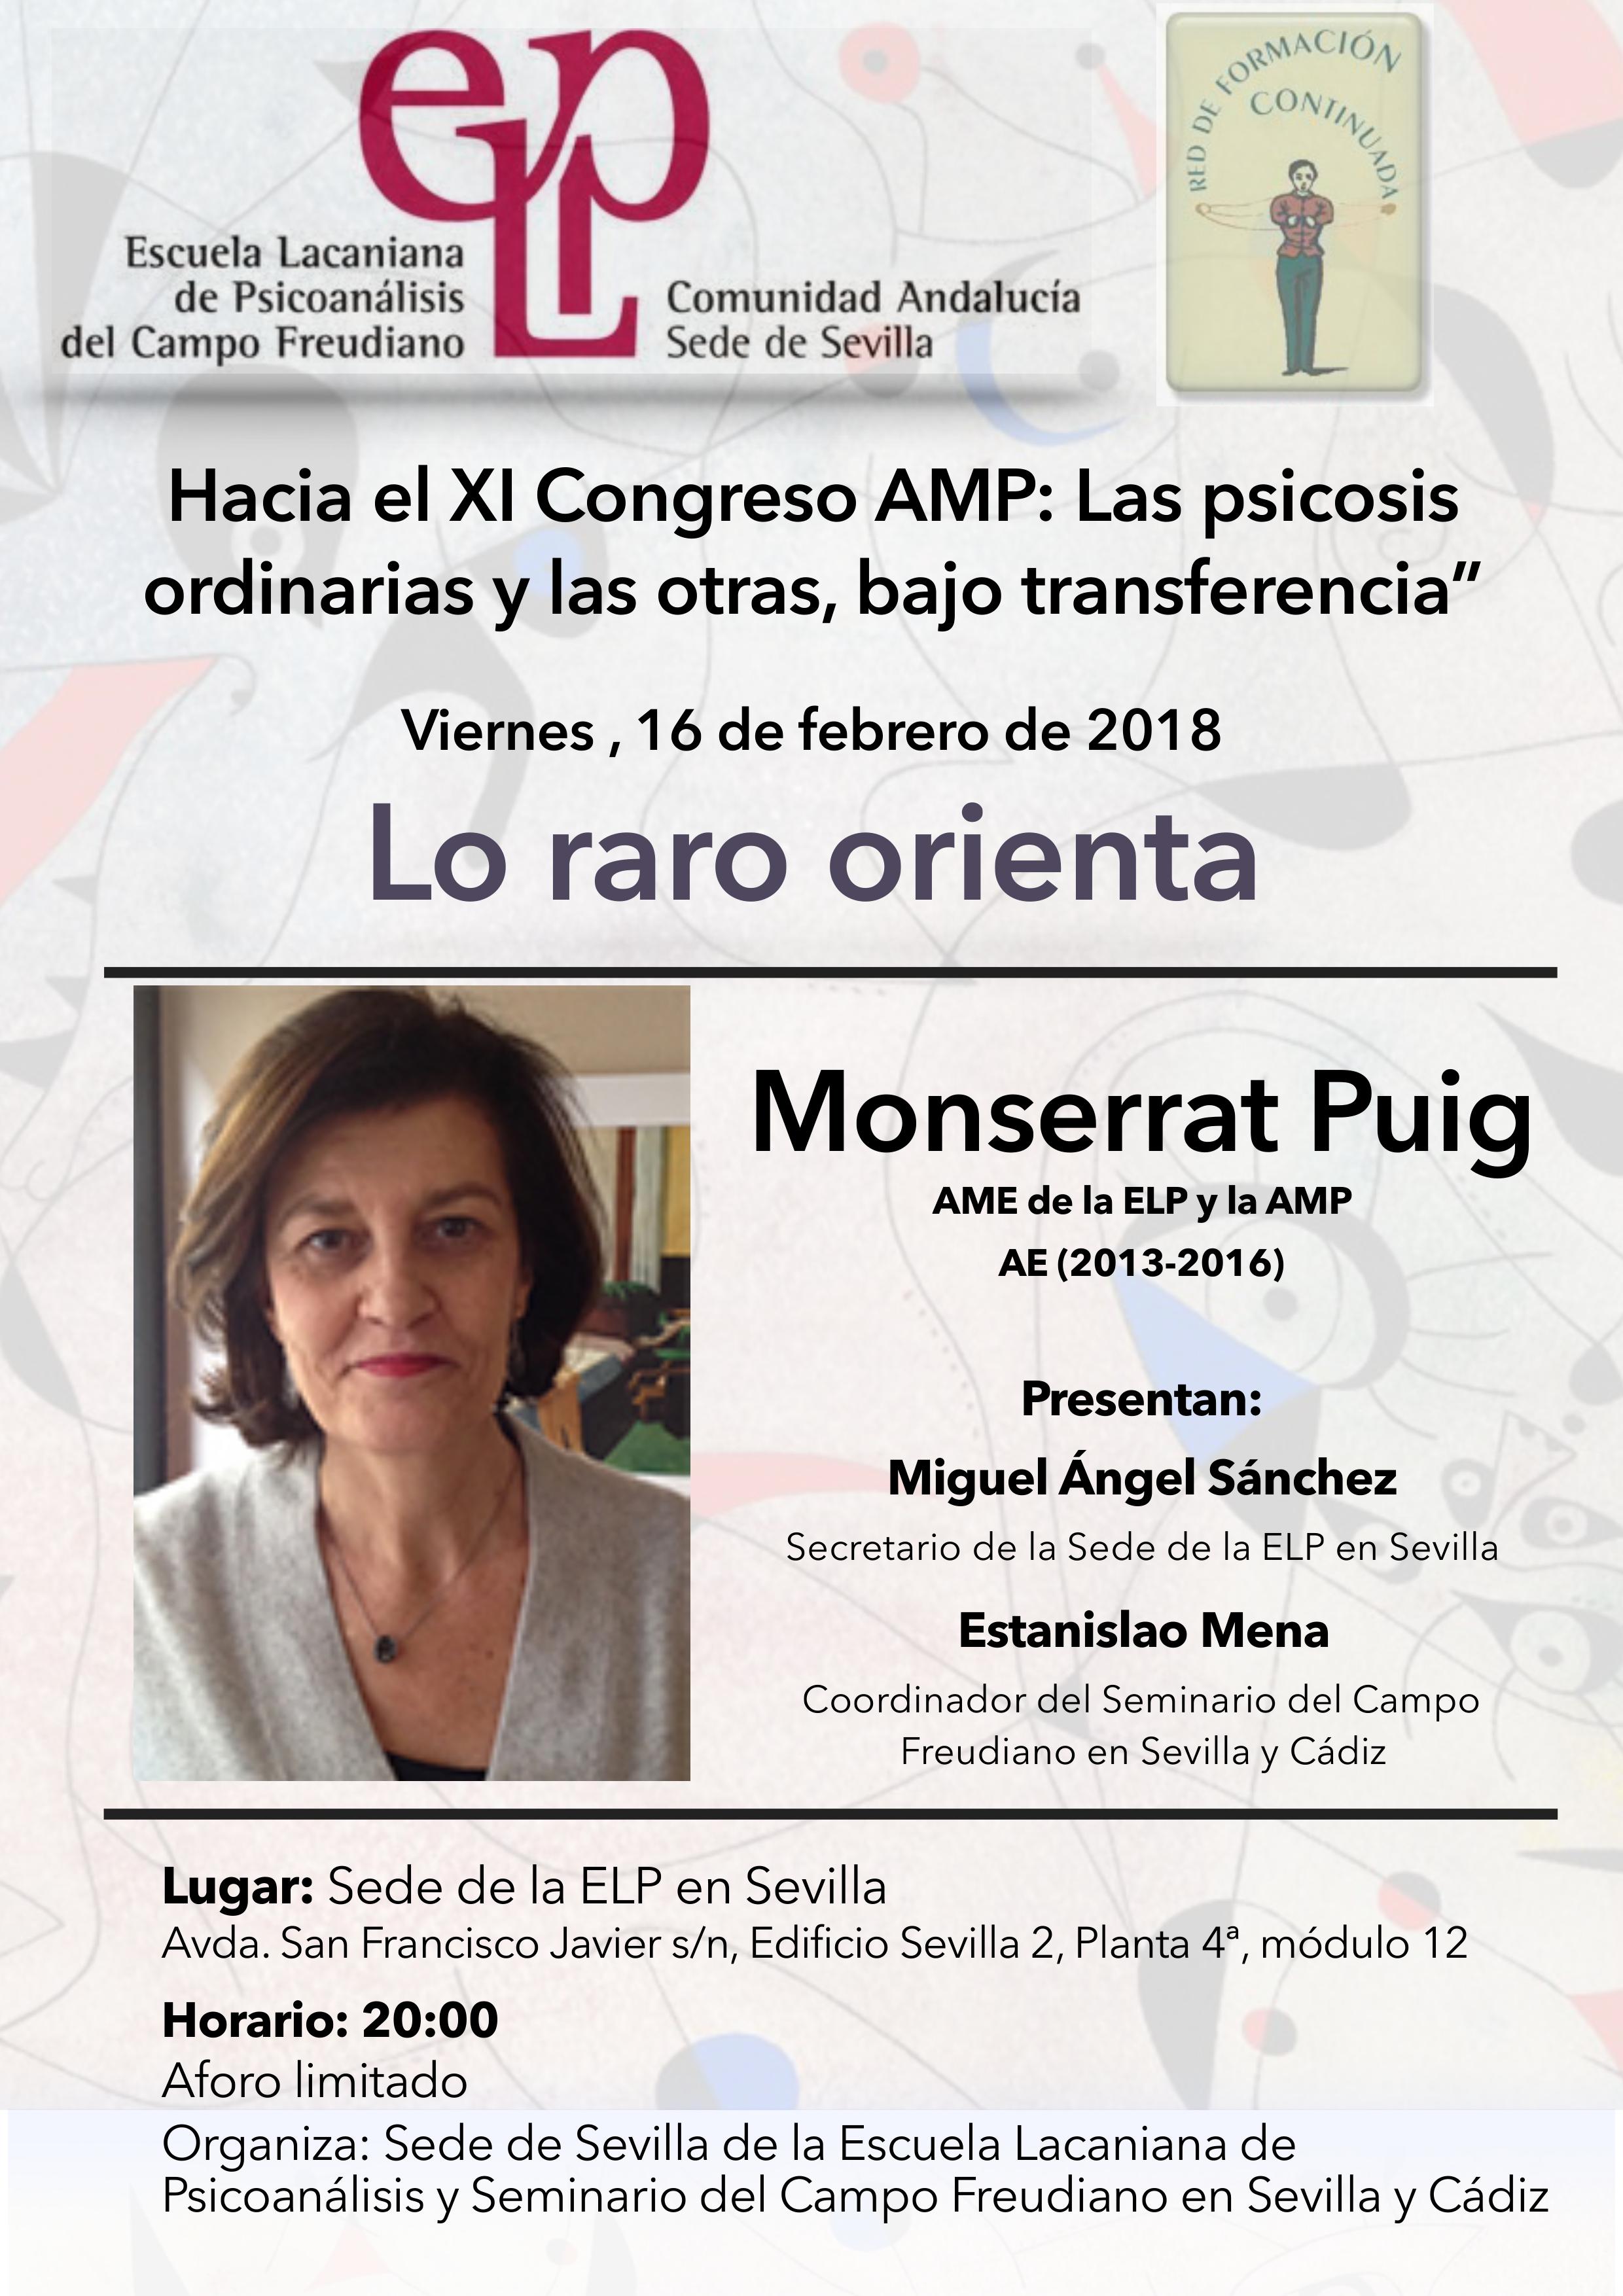 "Lo raro orienta" Conferencia de Monserrat Puig